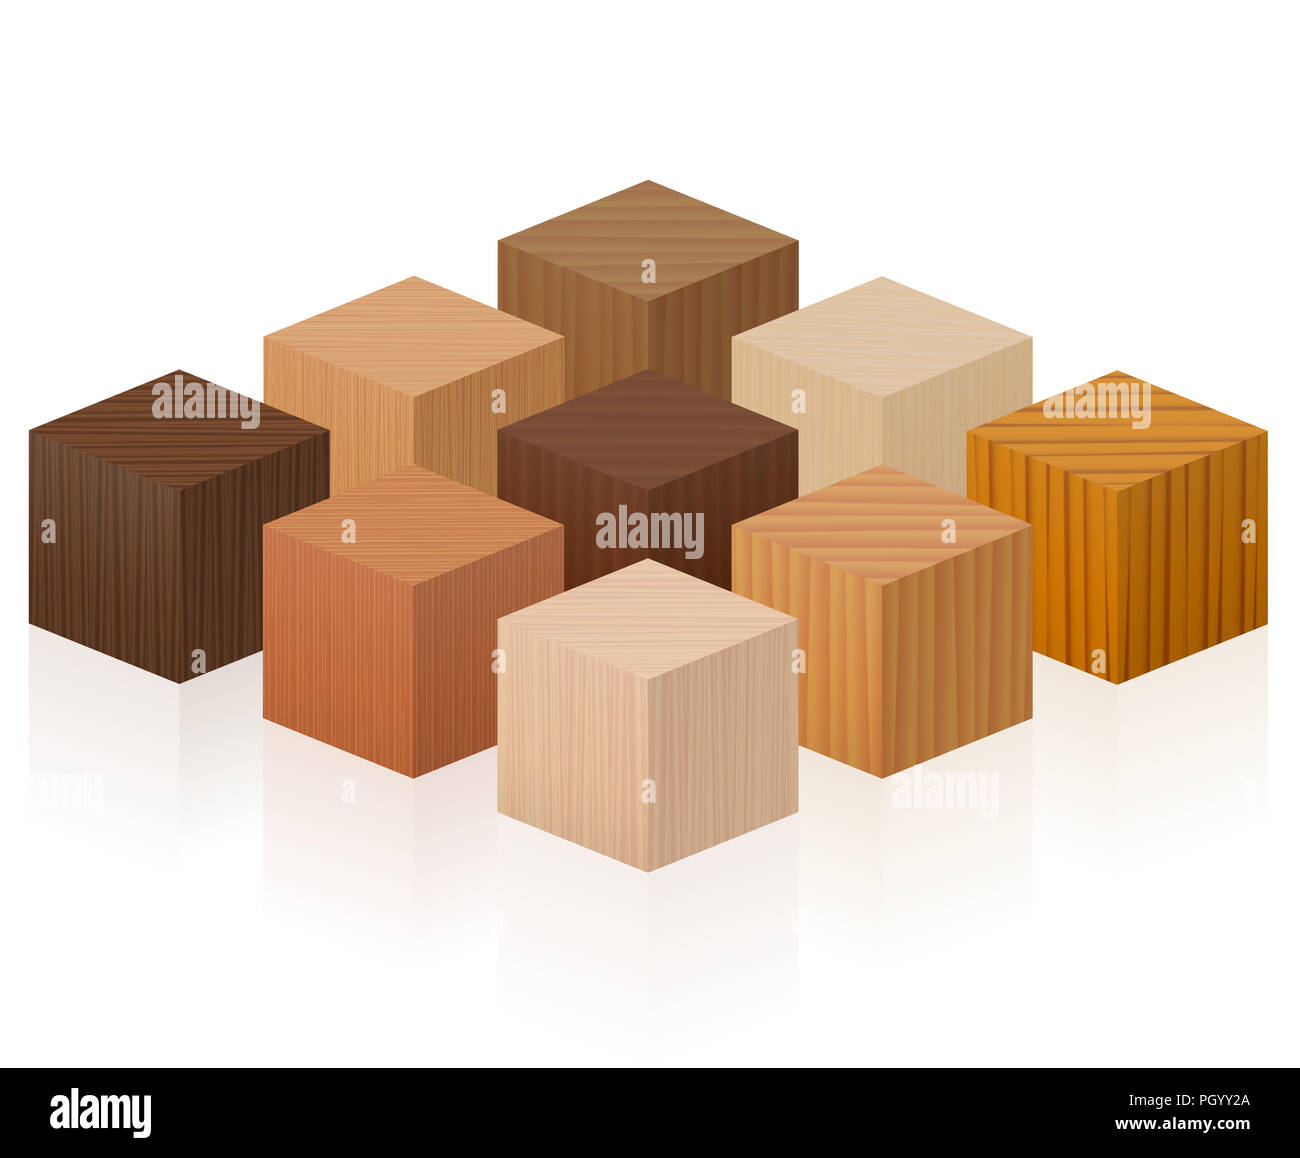 Cubes en bois - d'échantillons de bois avec différentes textures, couleurs, glaçures, de divers arbres de choisir - marron, noir, gris, léger, rouge, jaune, orange. Banque D'Images